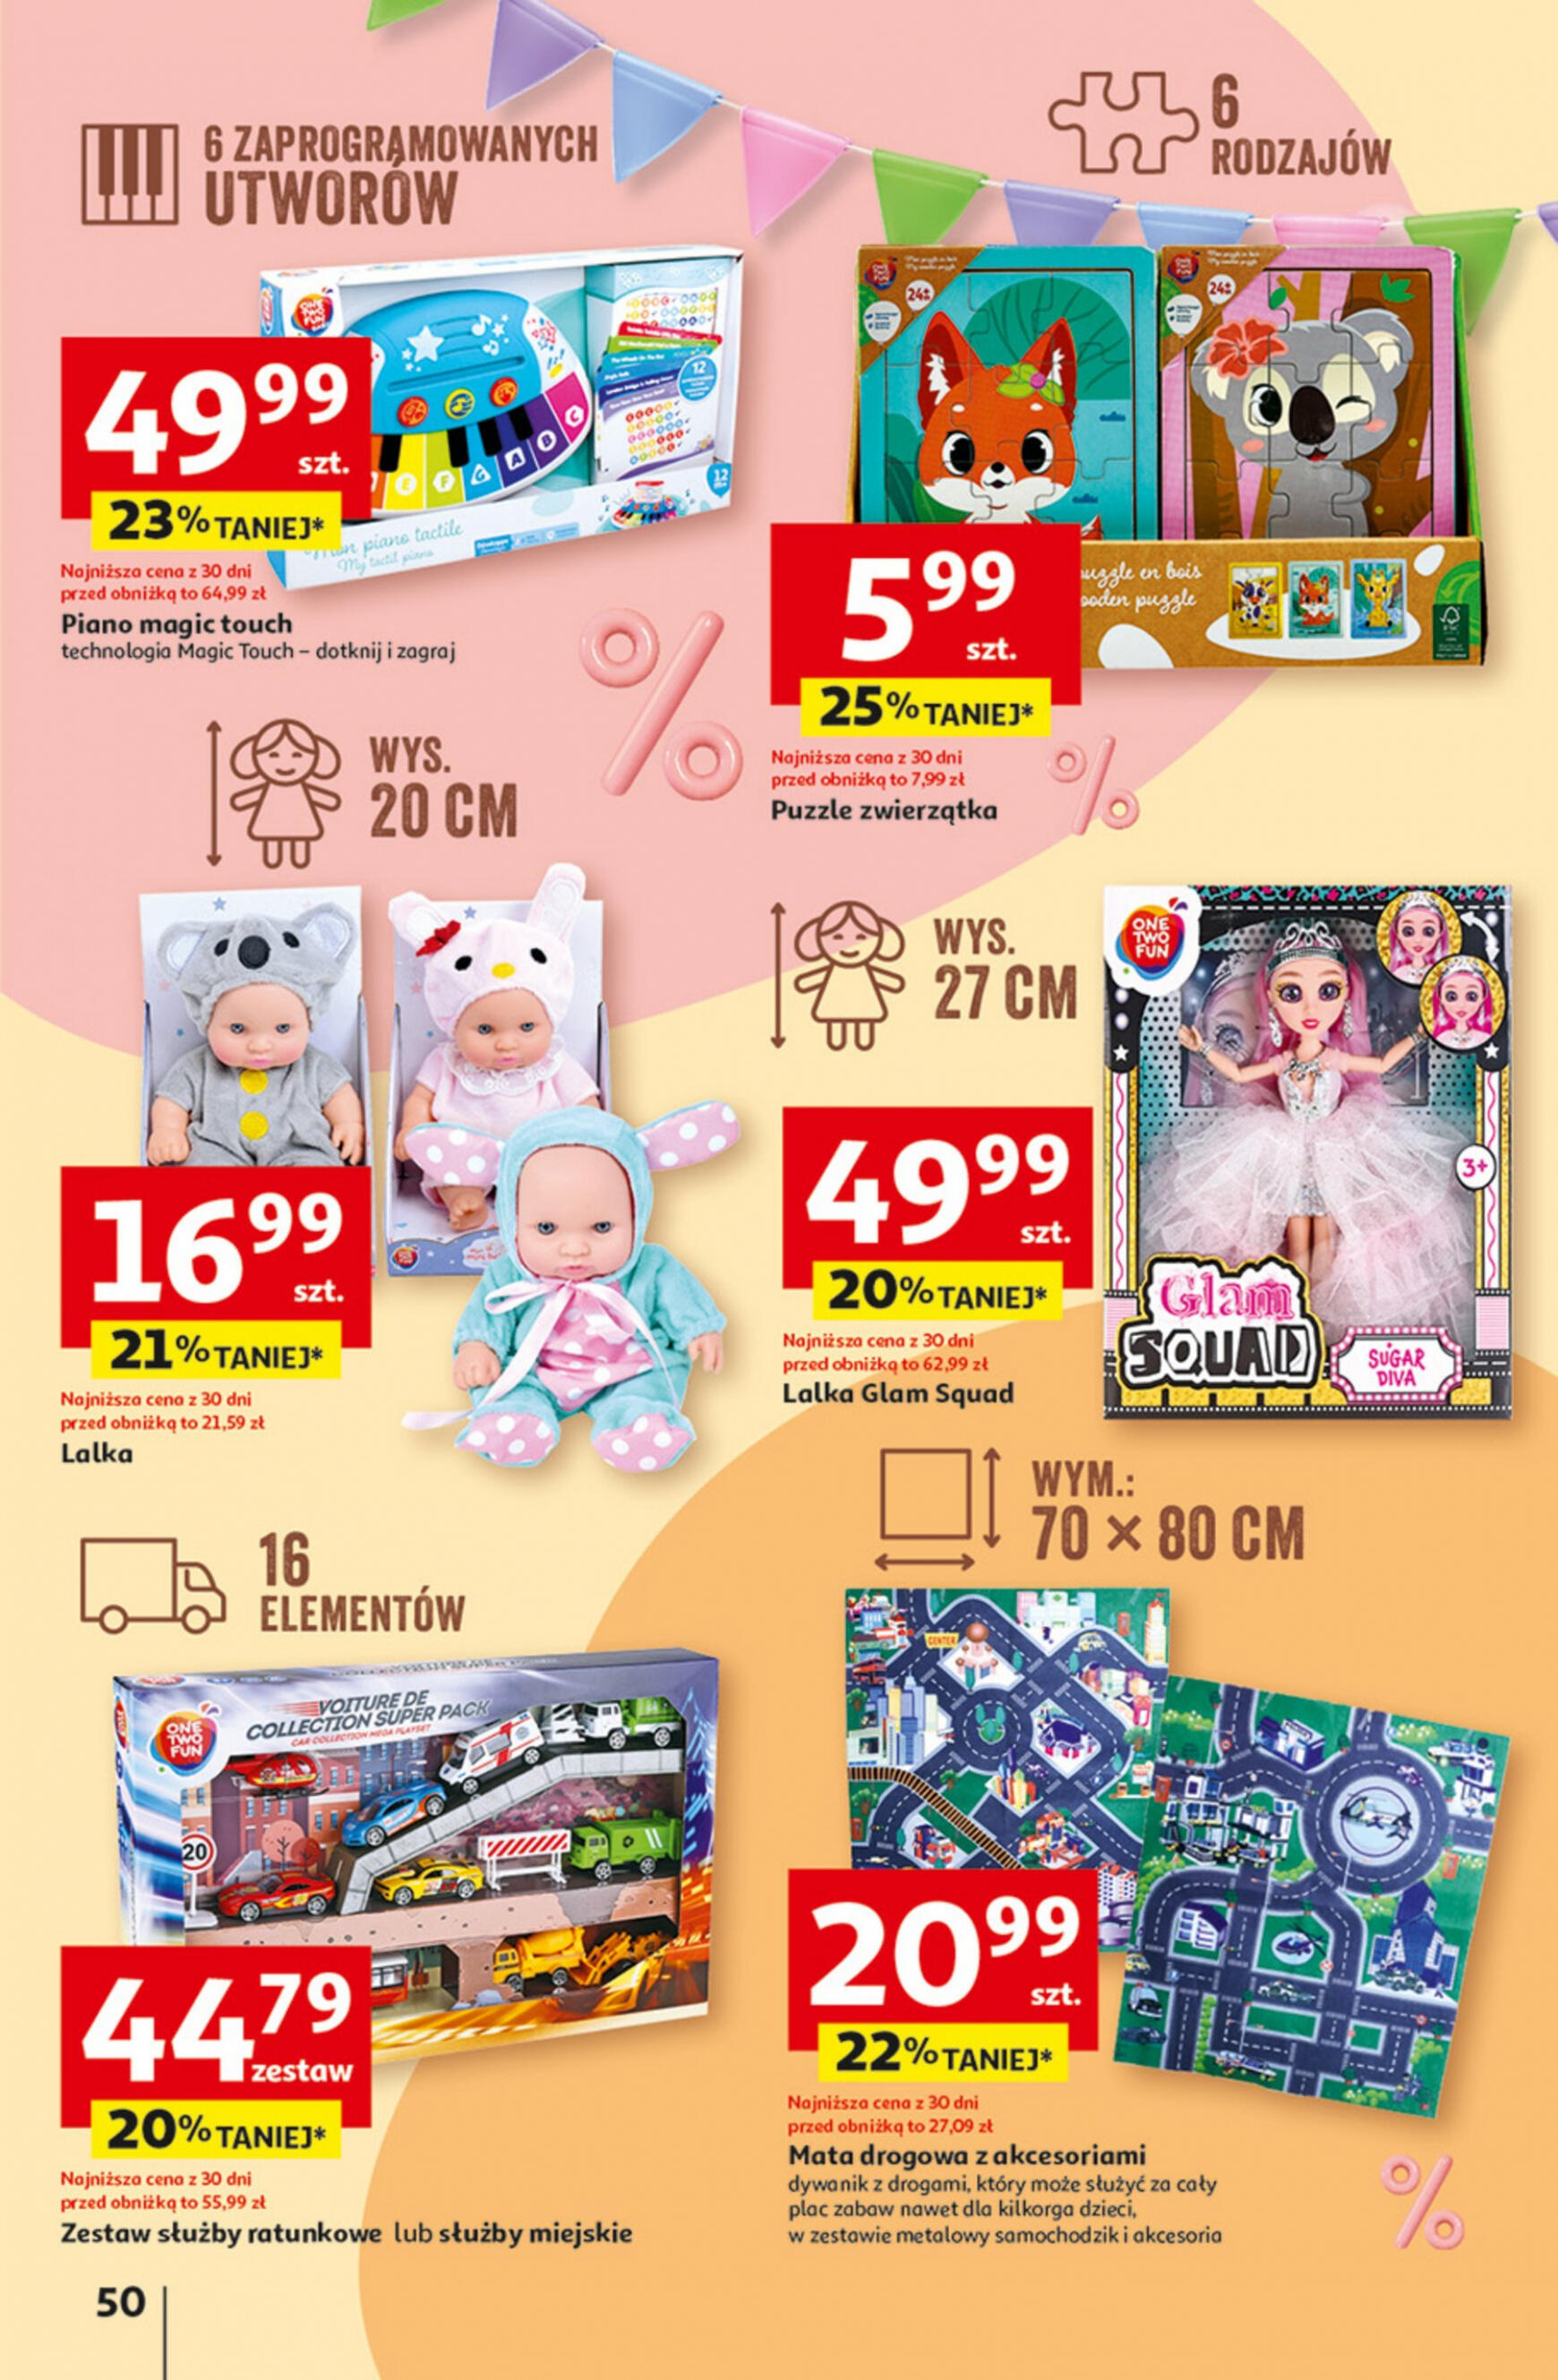 auchan - Hipermarket Auchan - Gazetka Jeszcze taniej na urodziny gazetka aktualna ważna od 09.05. - 15.05. - page: 50